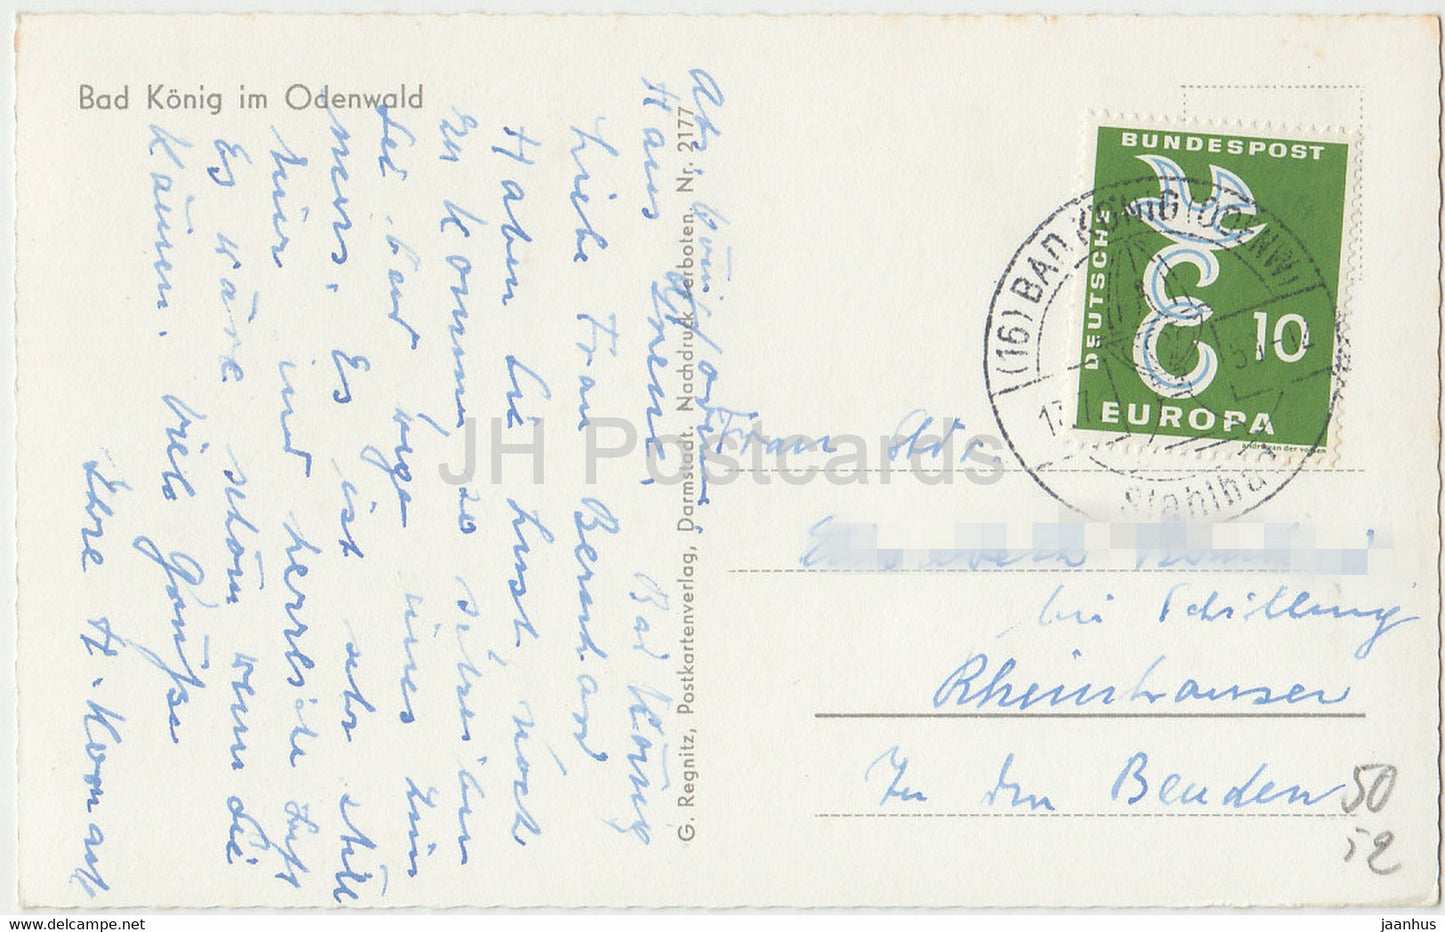 Bad König im Odenwald - 2177 - alte Postkarte - 1950er Jahre - Deutschland - gebraucht